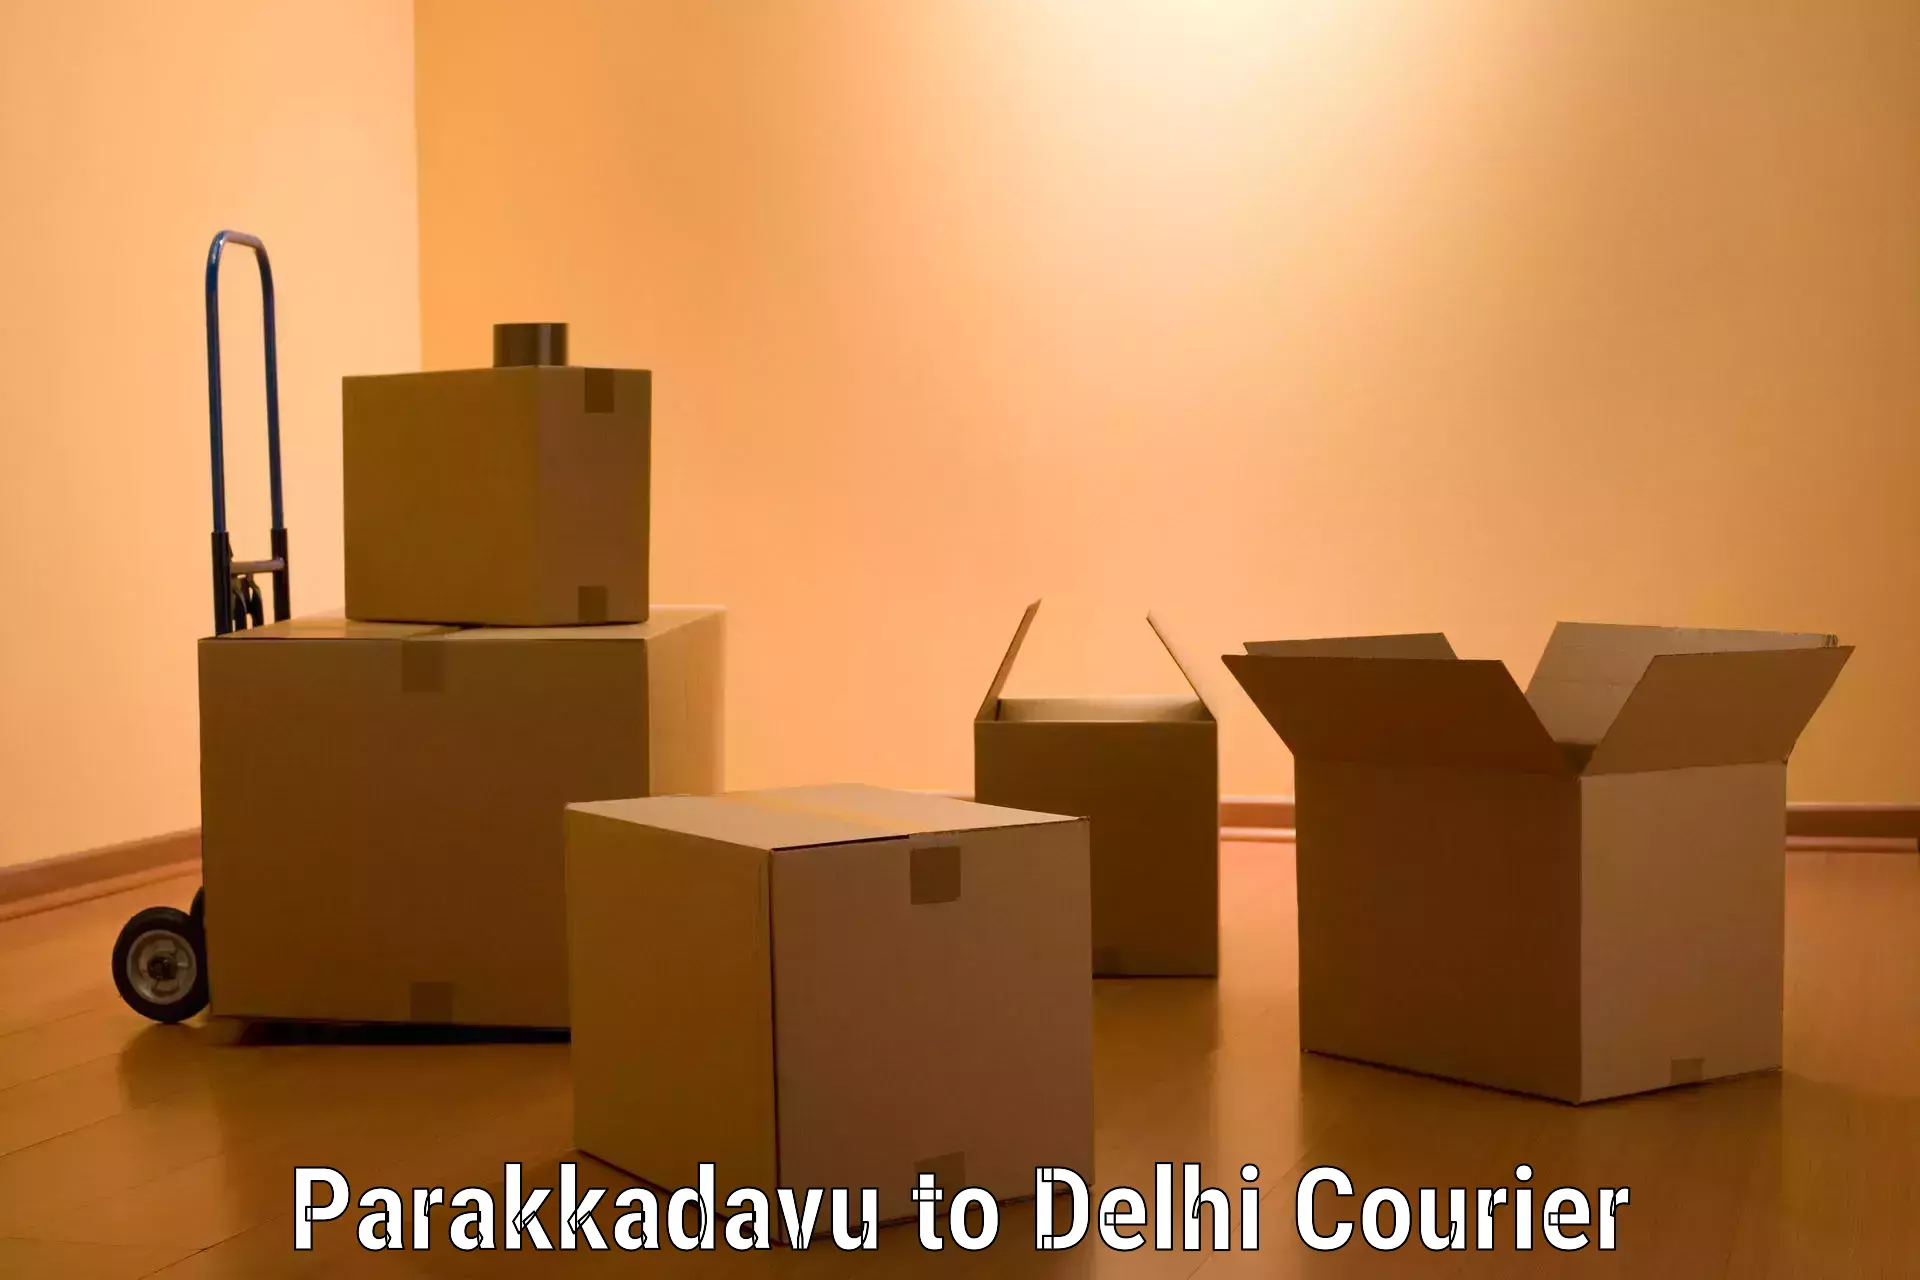 Professional furniture movers Parakkadavu to Jamia Millia Islamia New Delhi